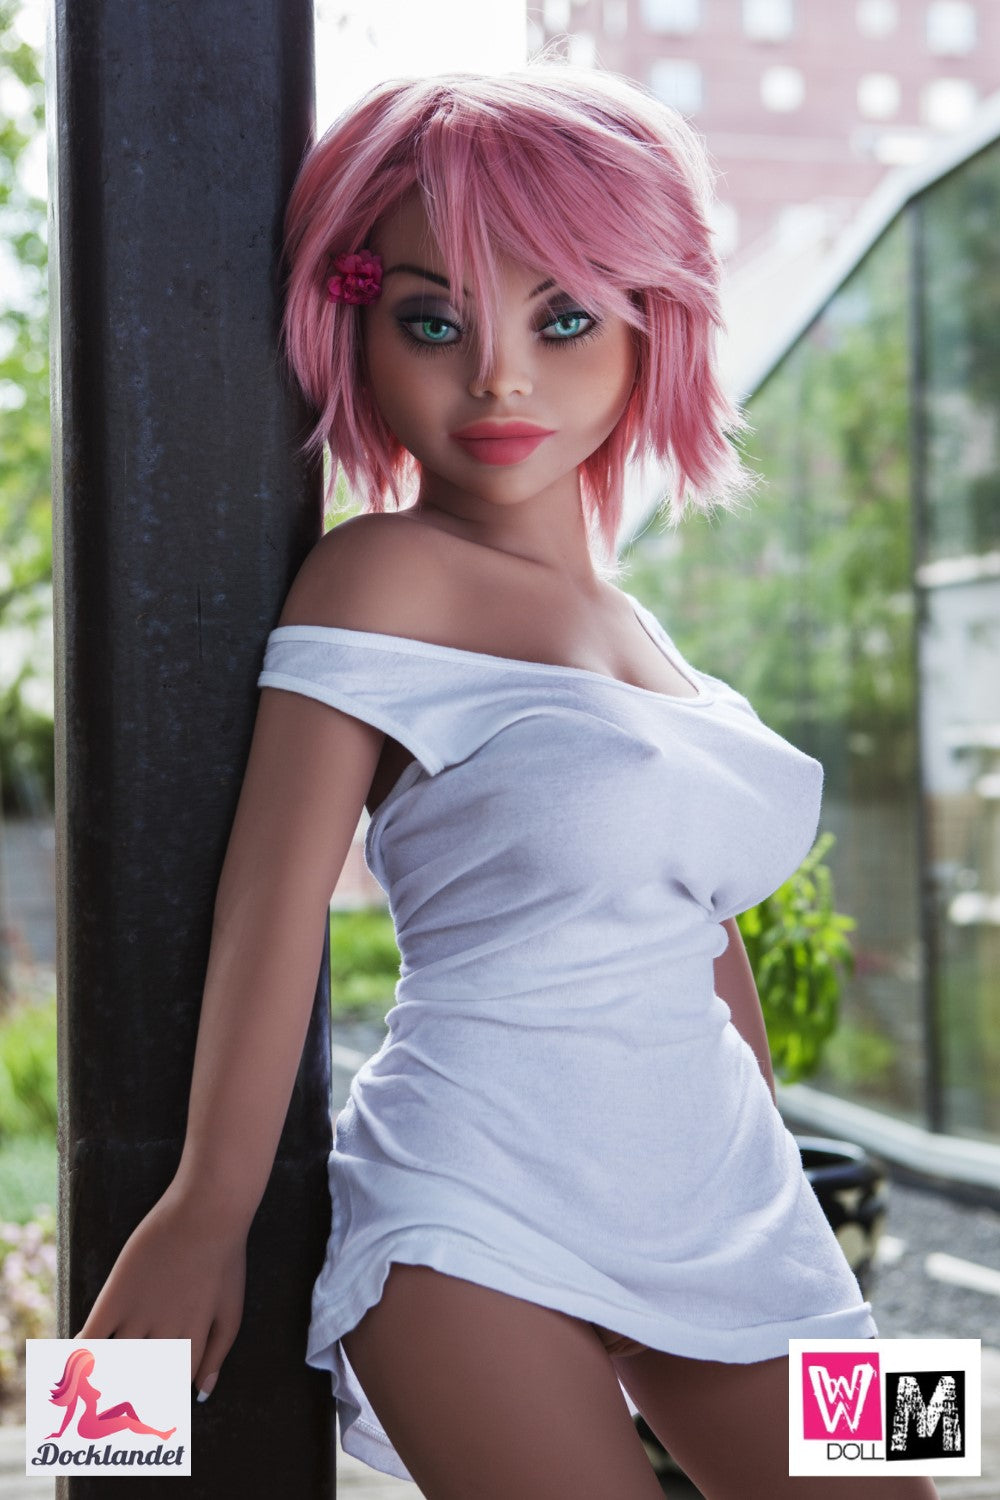 Dvärg-sexdocka från WM-Doll. En mini-sexdocka med rosa hår och stort huvud. Denna sexdocka ser ut som en dvärg. För dina vildaste fantasier!